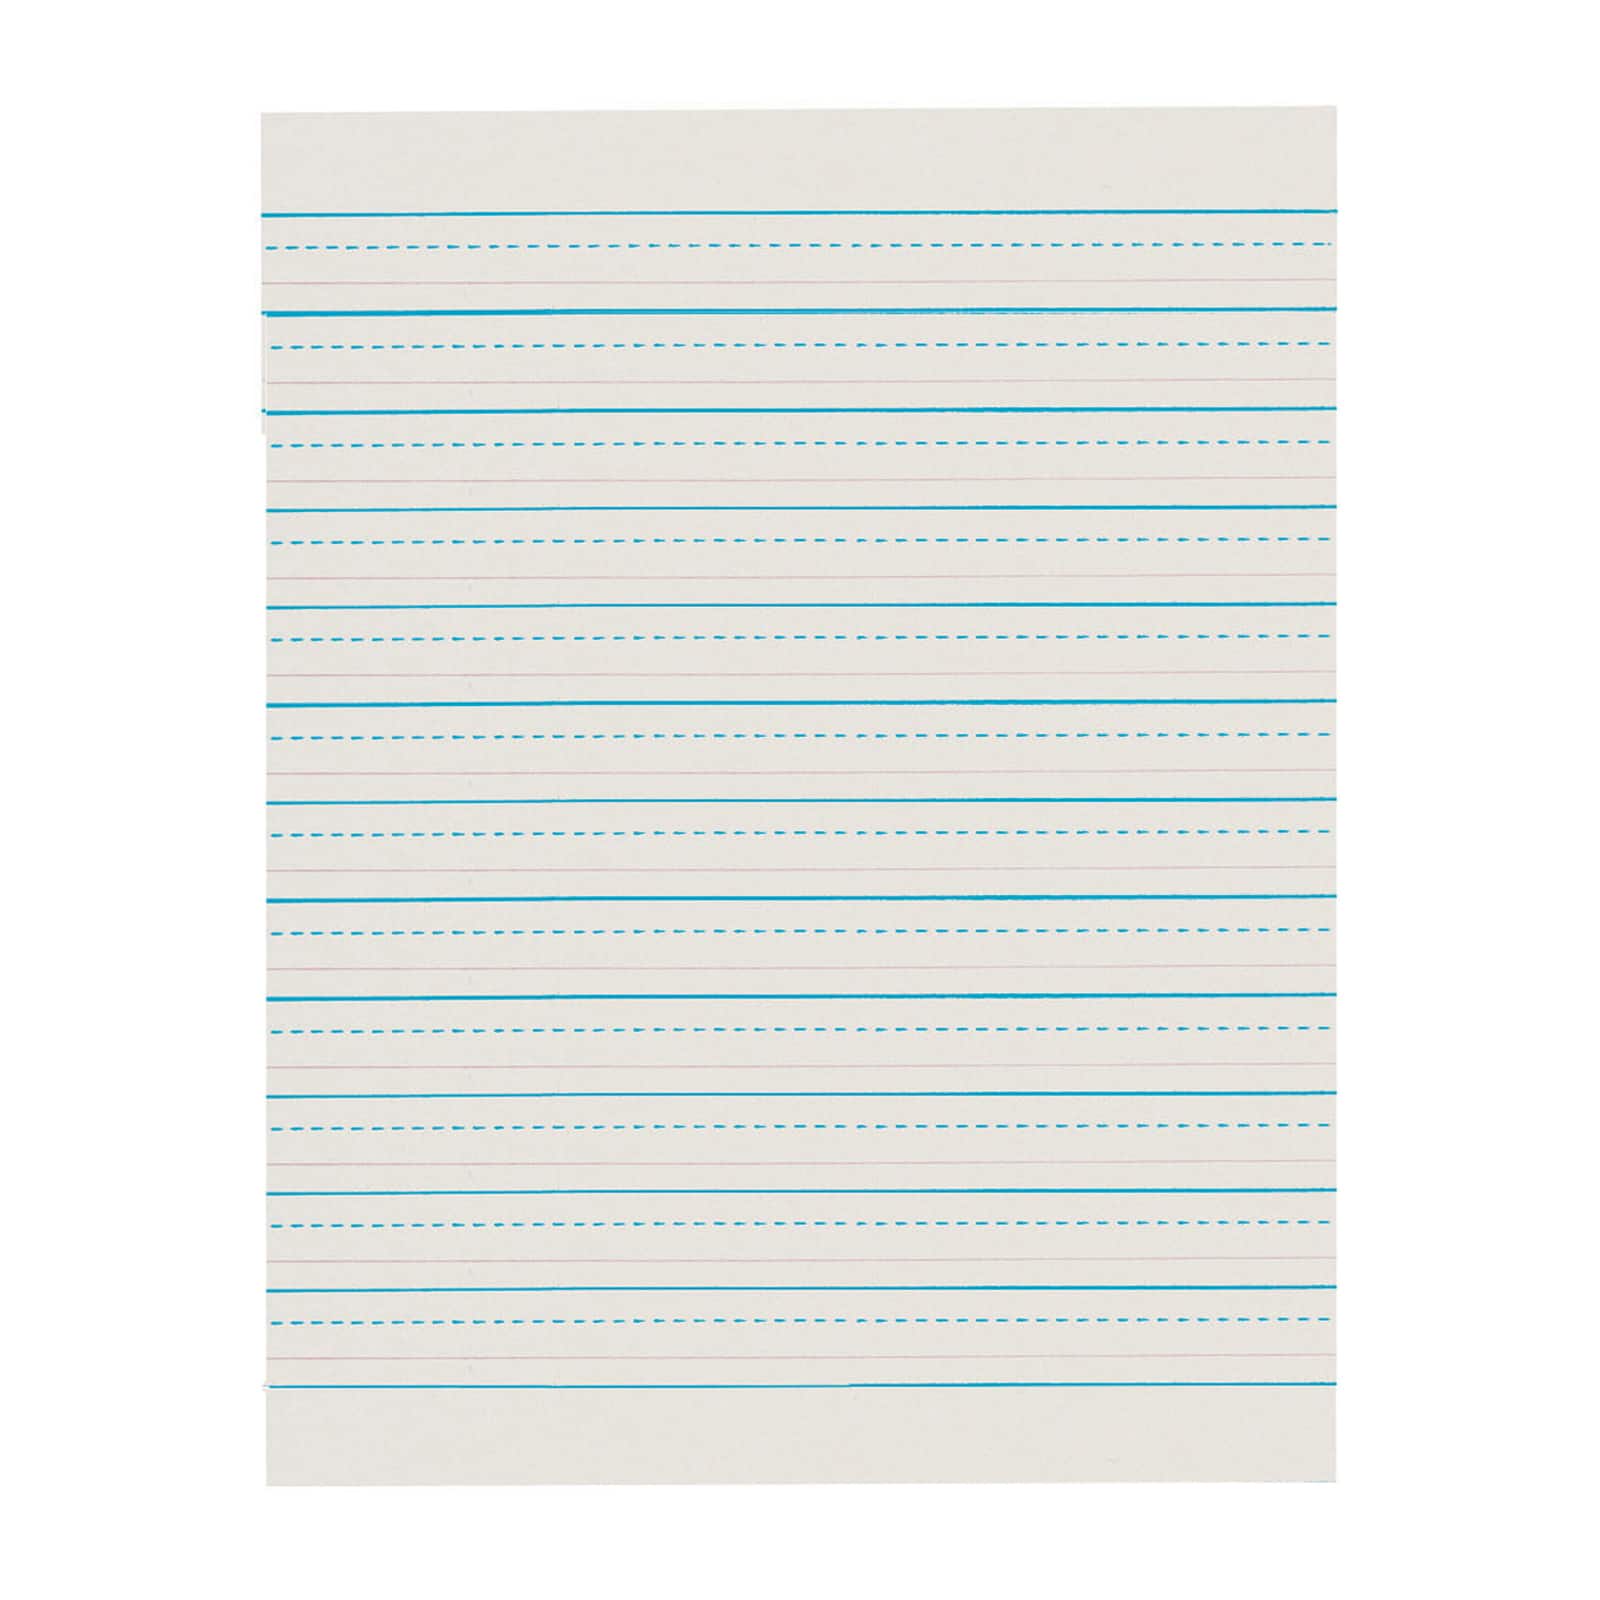 D'Nealian™ Ruled Handwriting Newsprint Paper, 5 Packs of 500